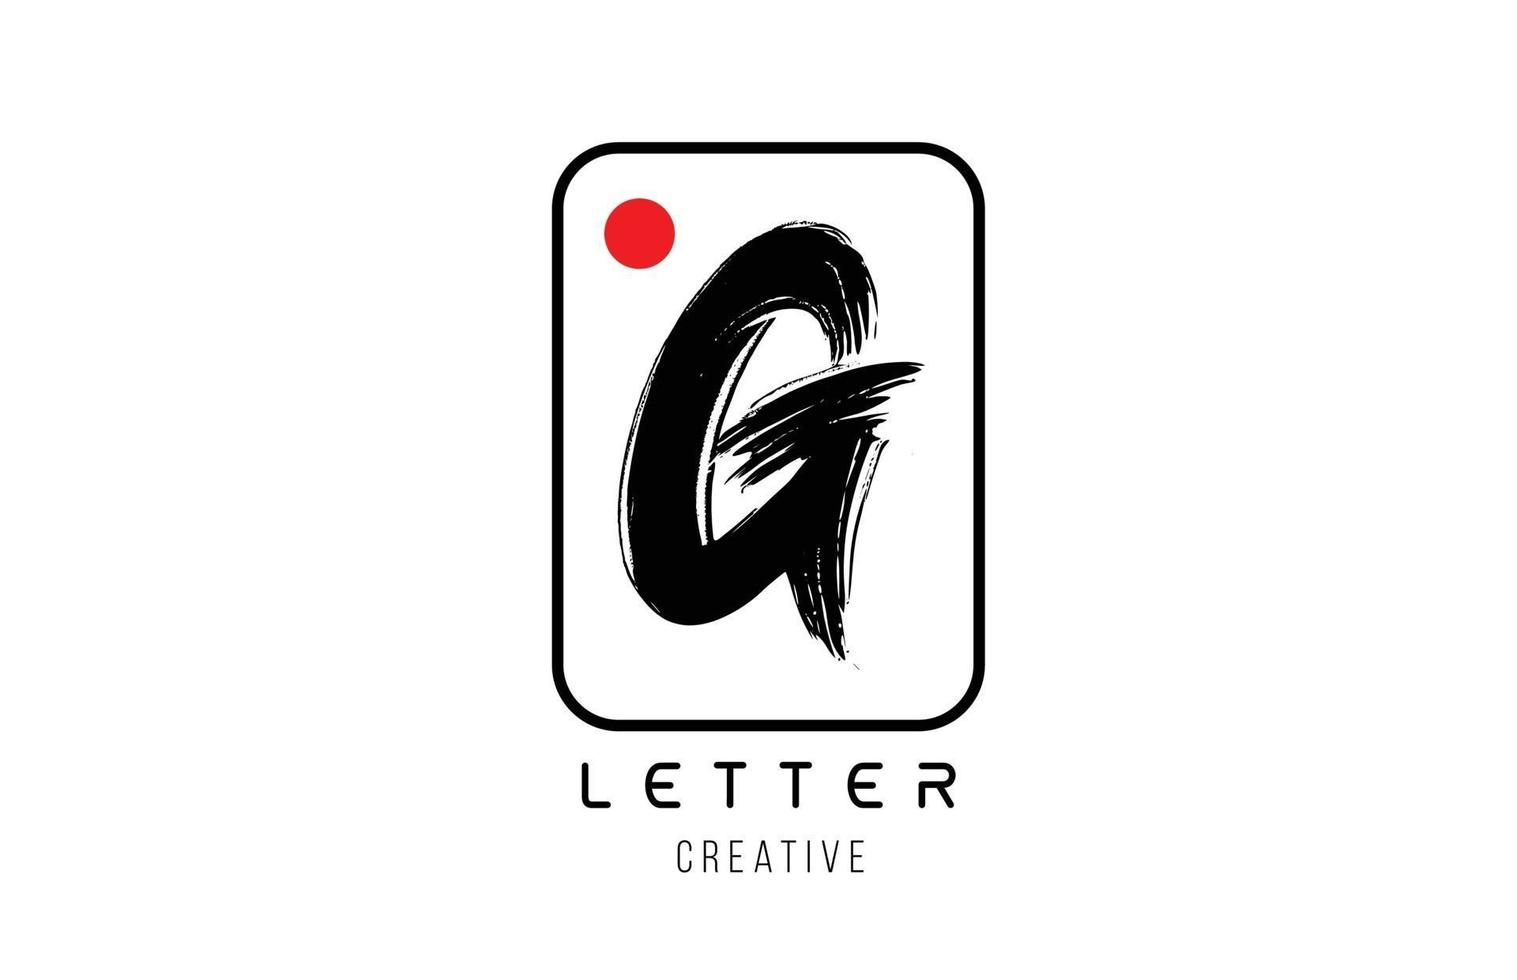 Buchstabe Alphabet g Grunge grungy Pinseldesign für Logo-Firmensymbol vektor